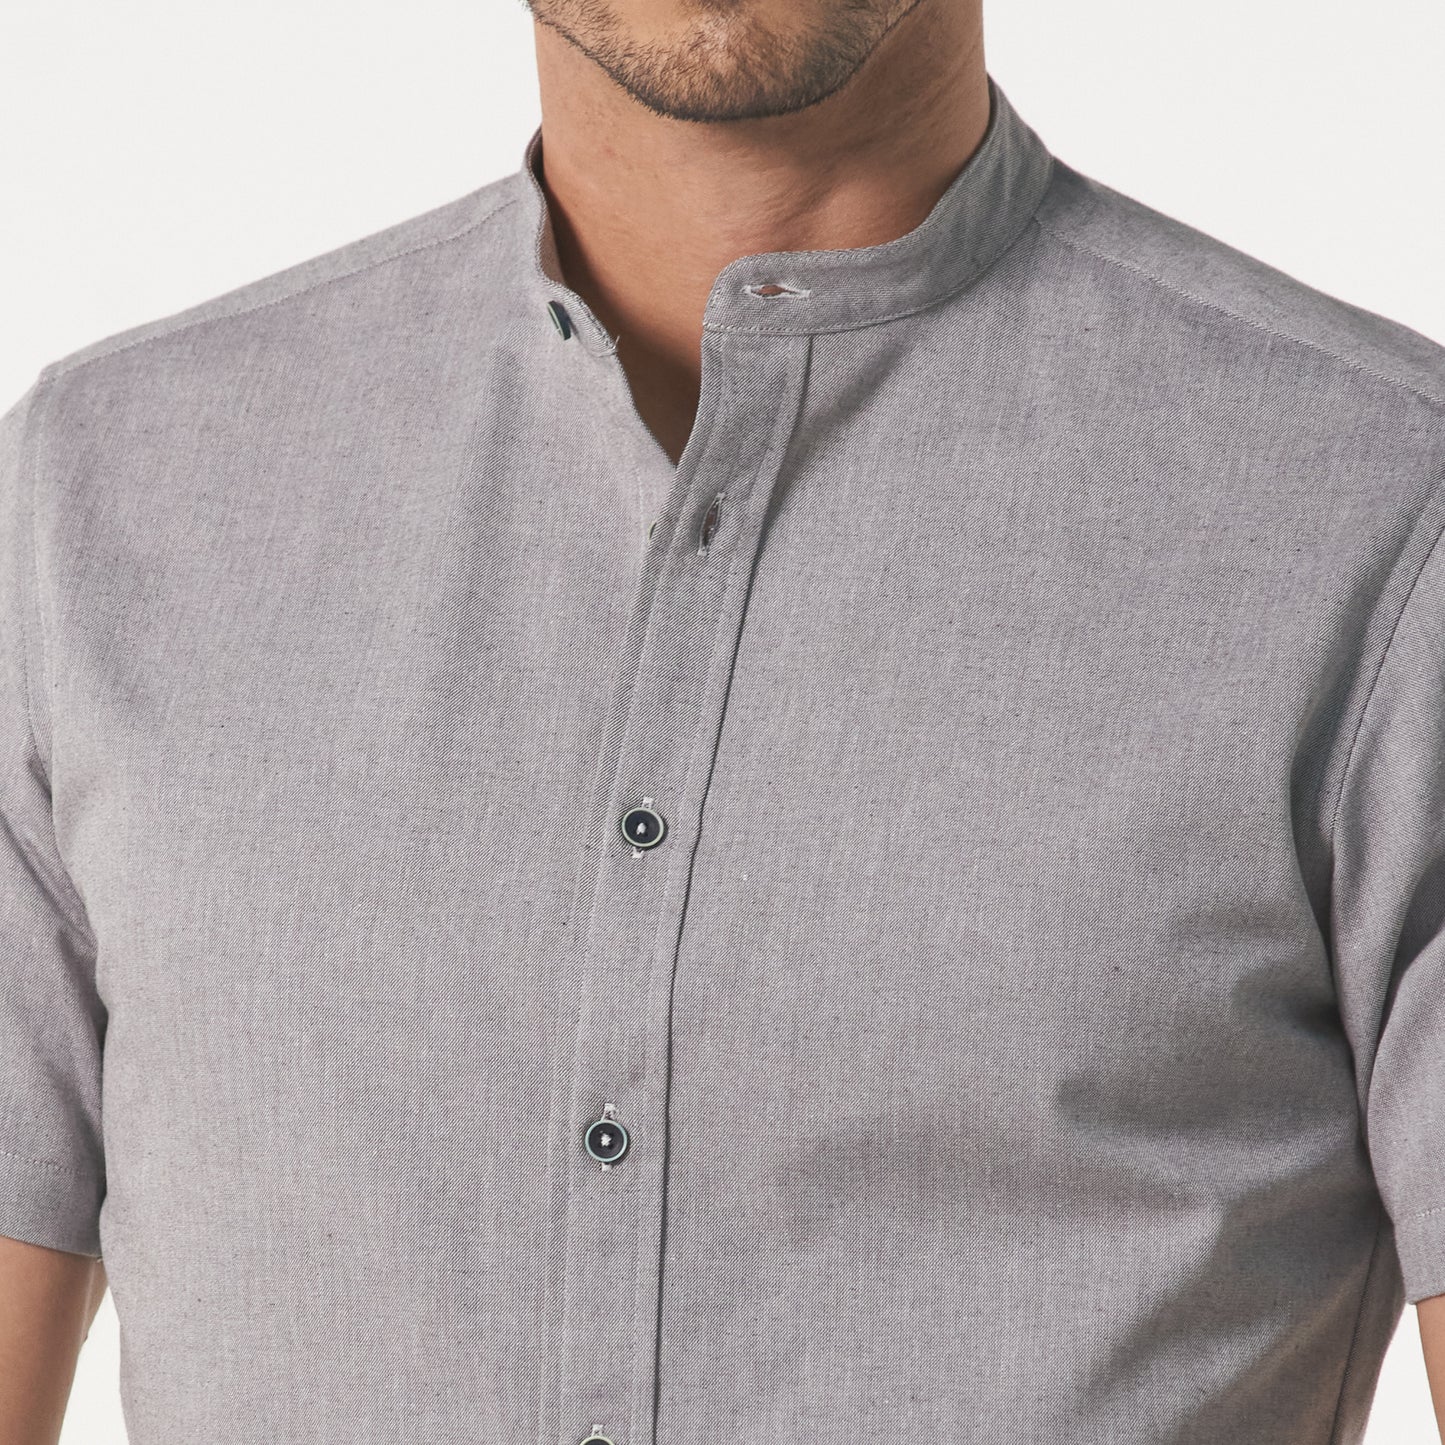 Camisa cuello nerú manga corta color gris medio